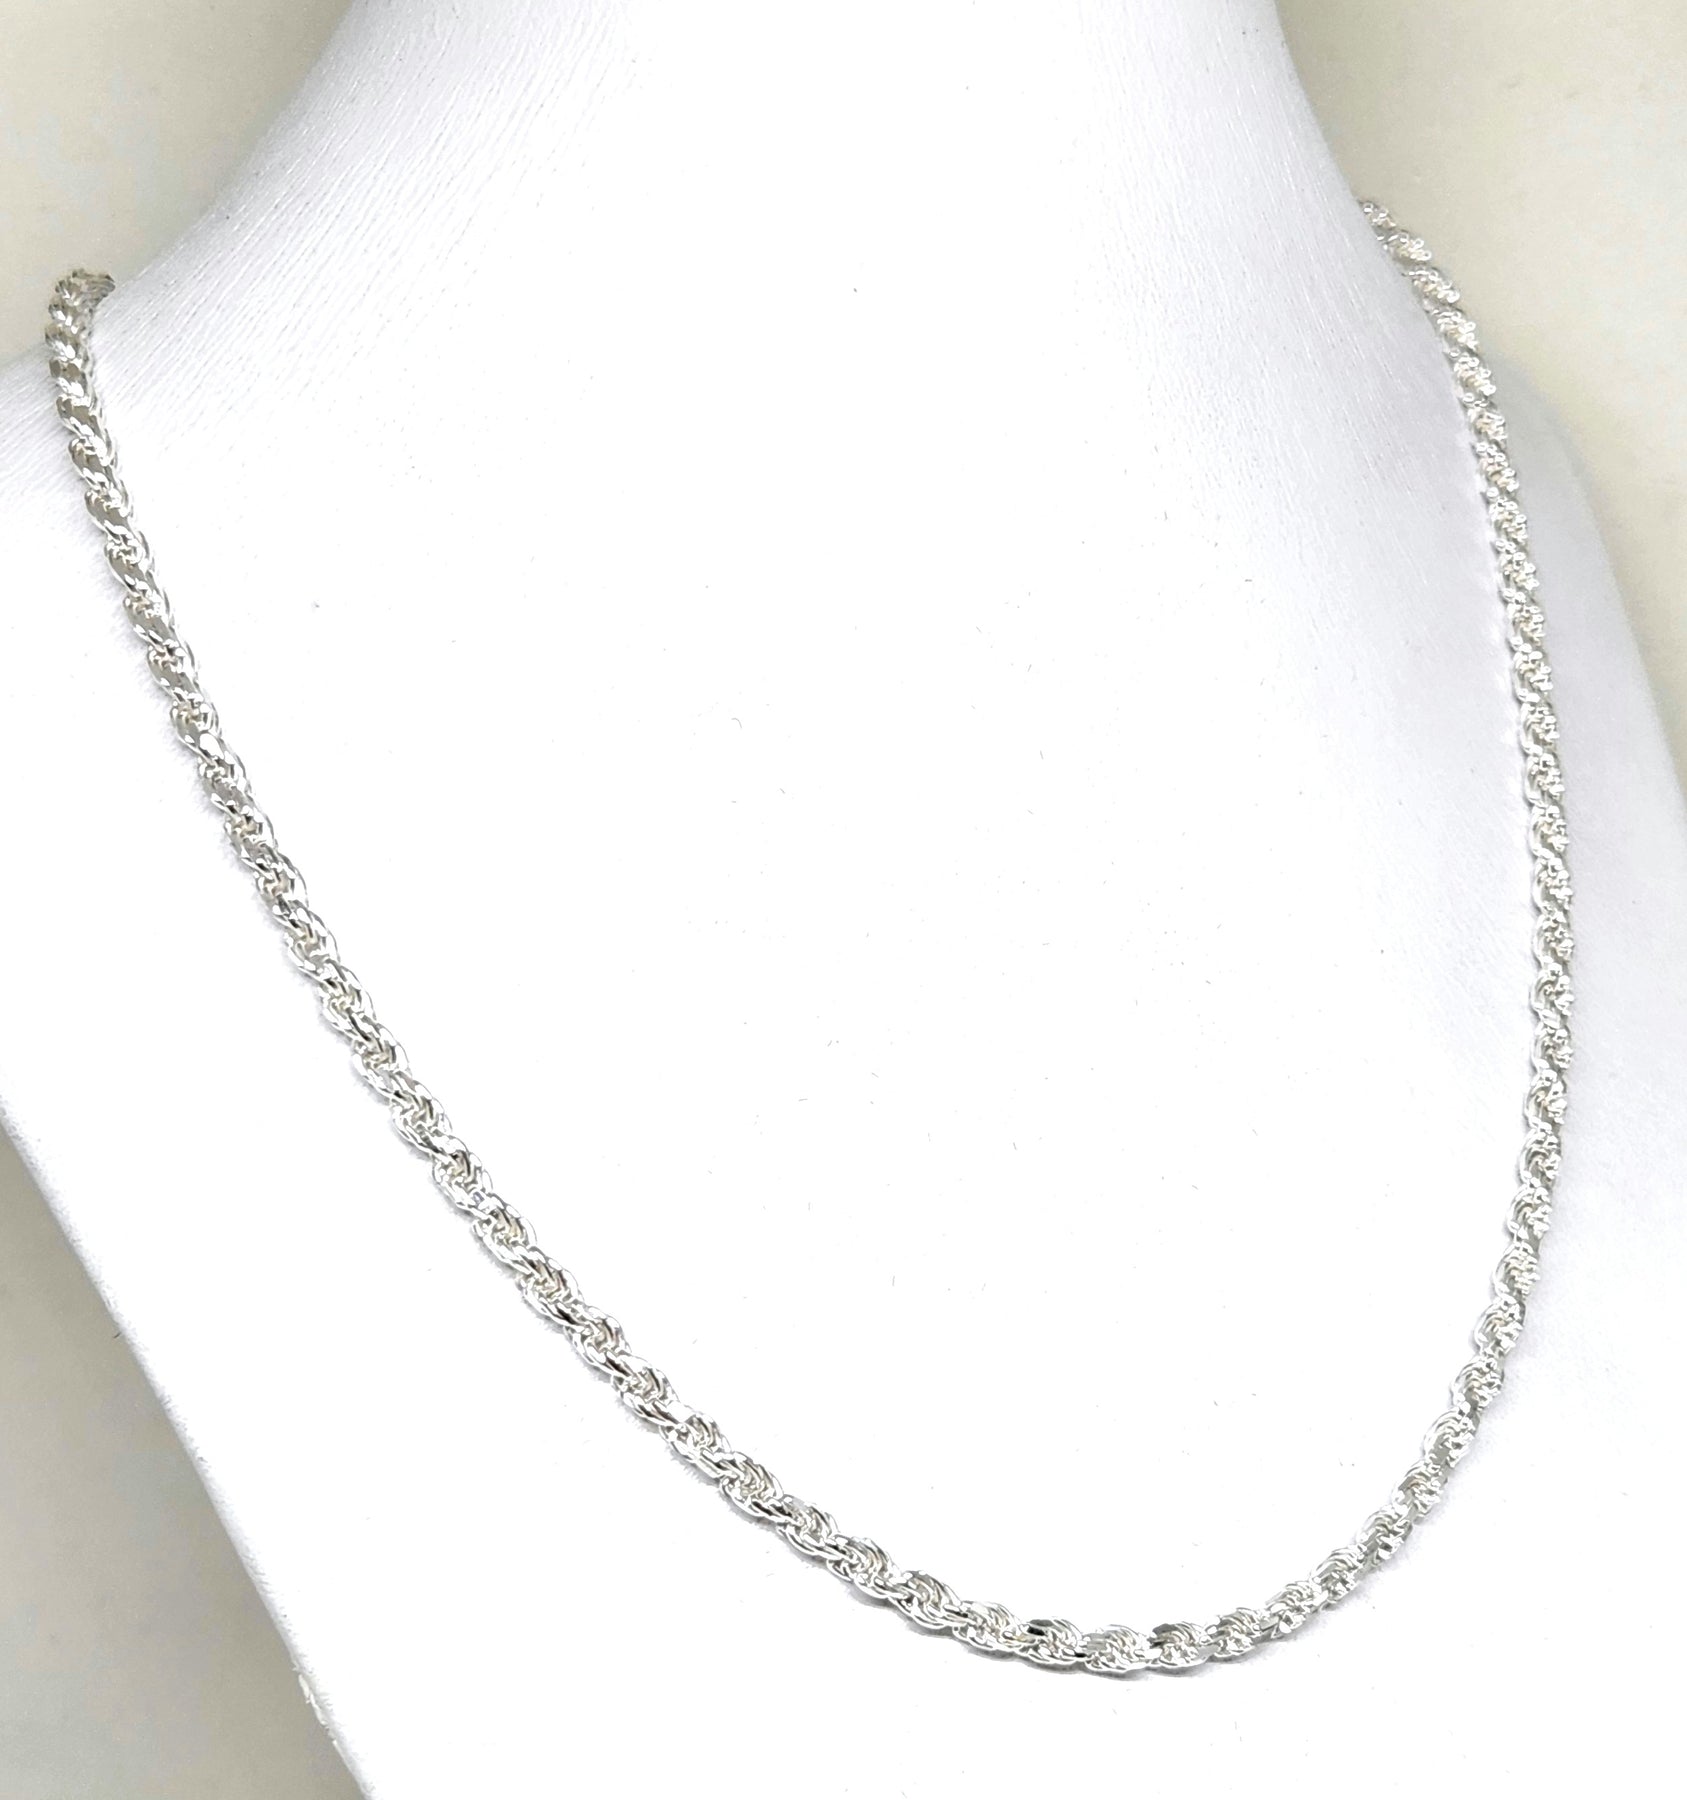 Necklaces of Mexican Silver certified .925 – Prata Joyería